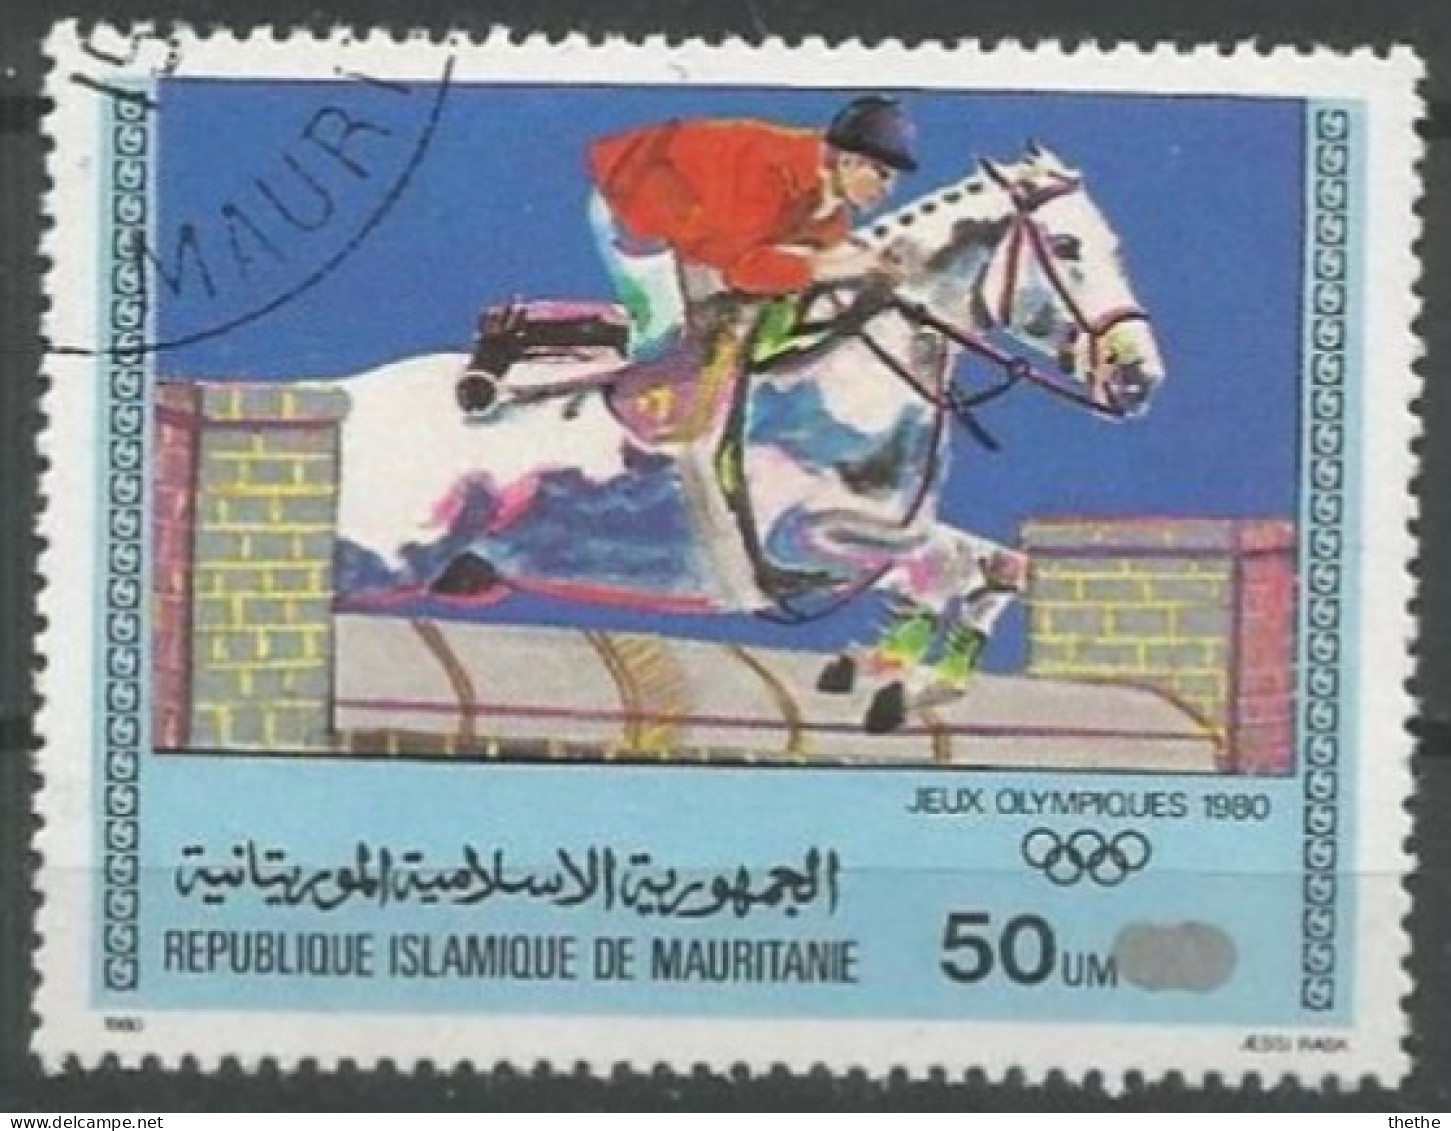 MAURITANIE - Jeux Olympiques De Moscou - Equitation - Verano 1980: Moscu